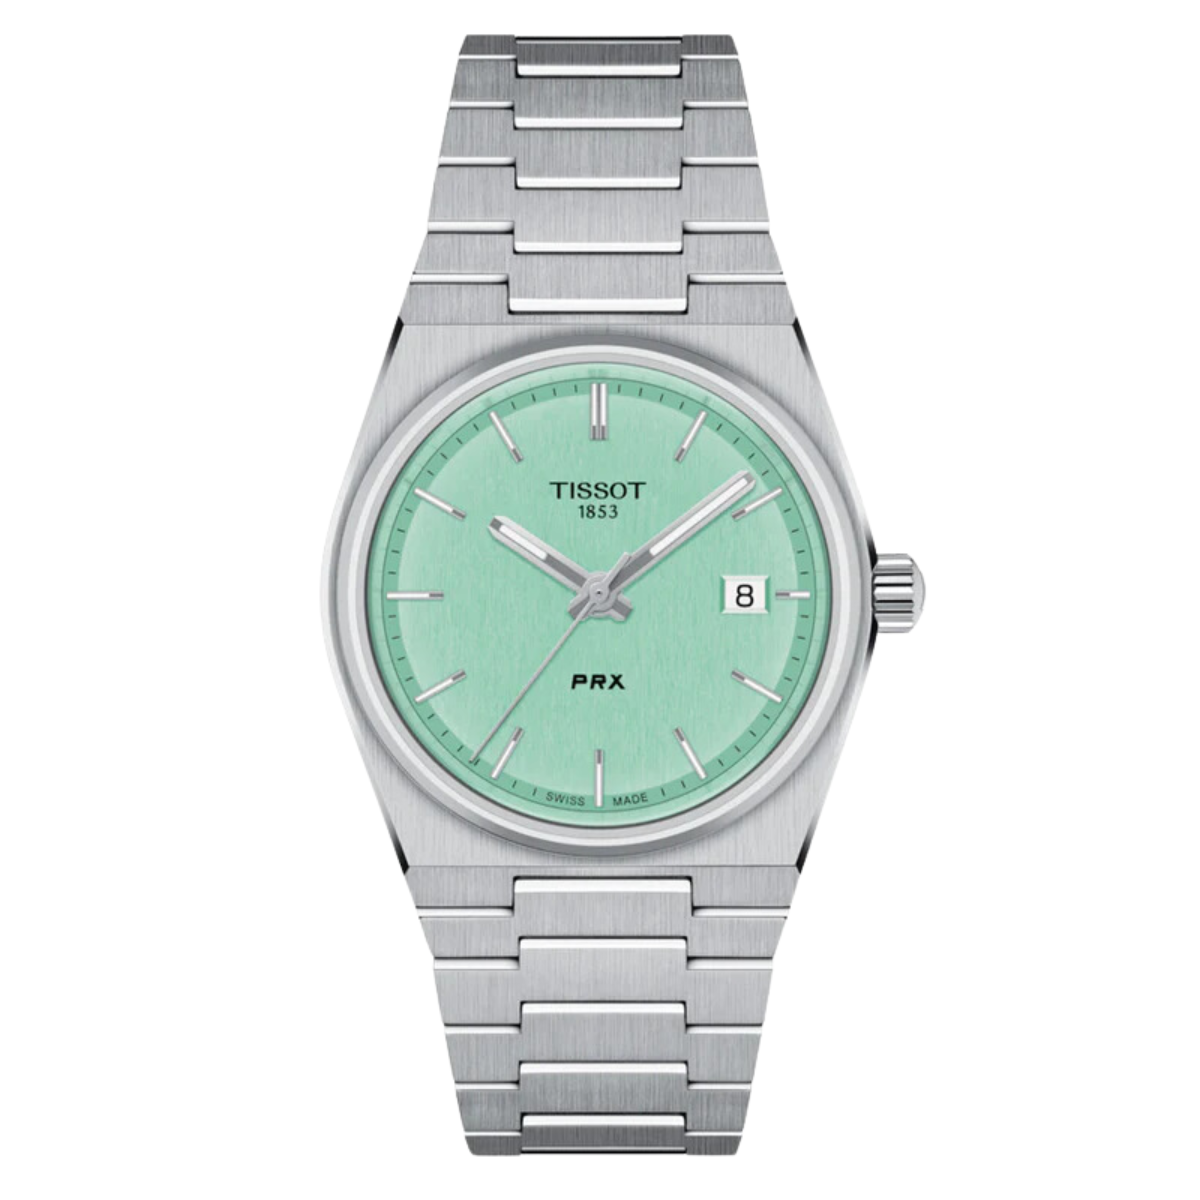 Tissot 1853 PRX T1372101109100 T137.210.11.091.00 Quartz Light Green Dial Watch